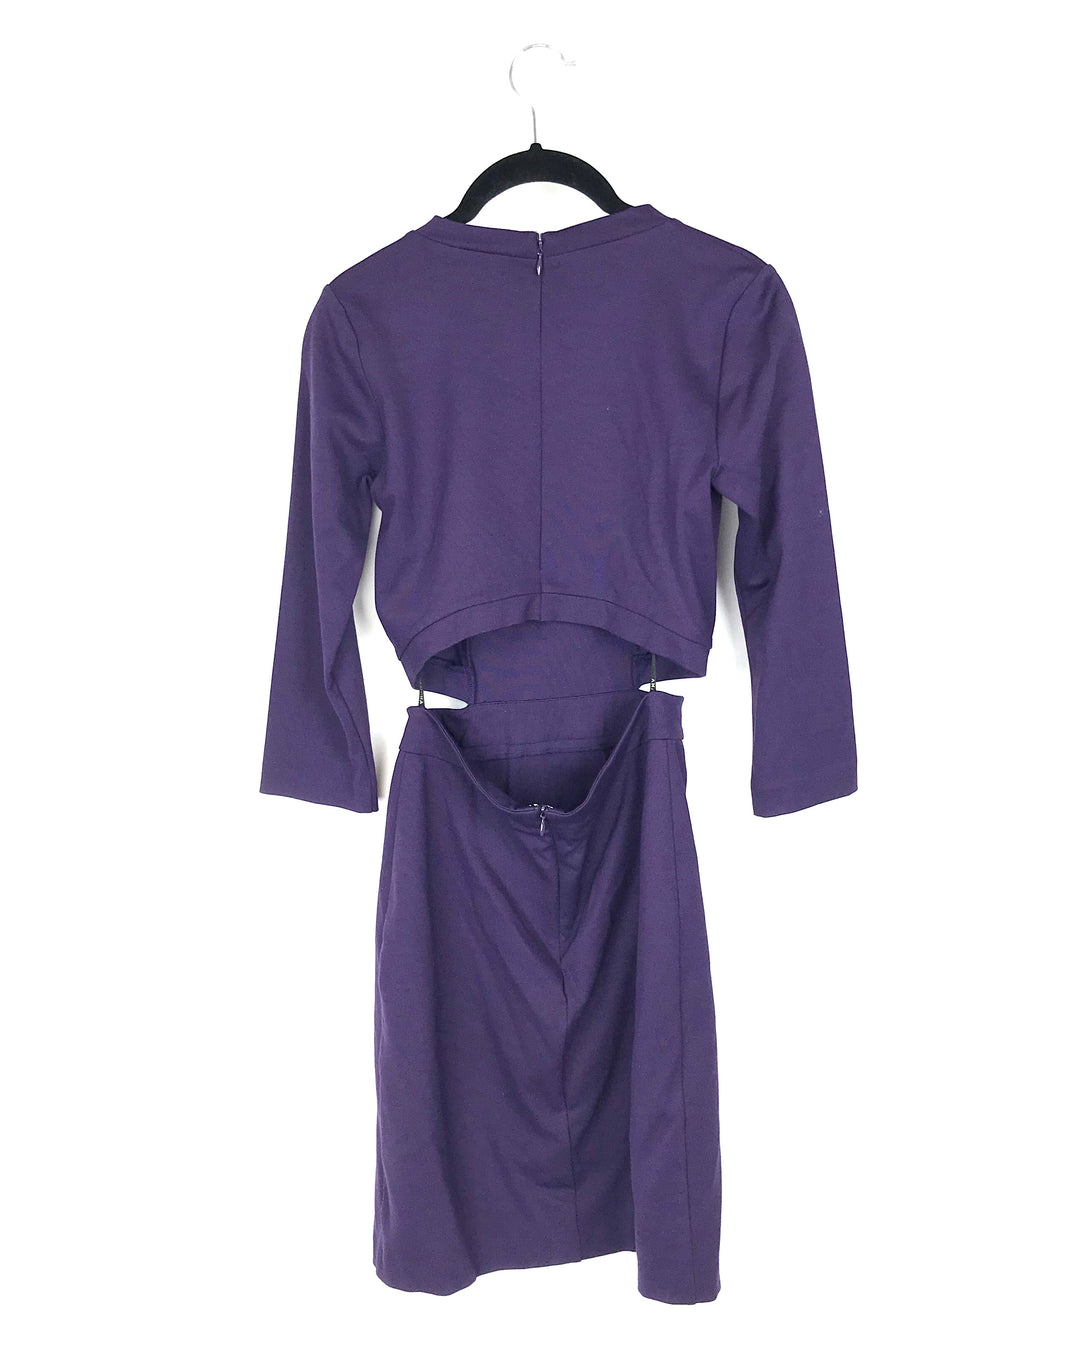 Purple Cut-Out Dress - Small